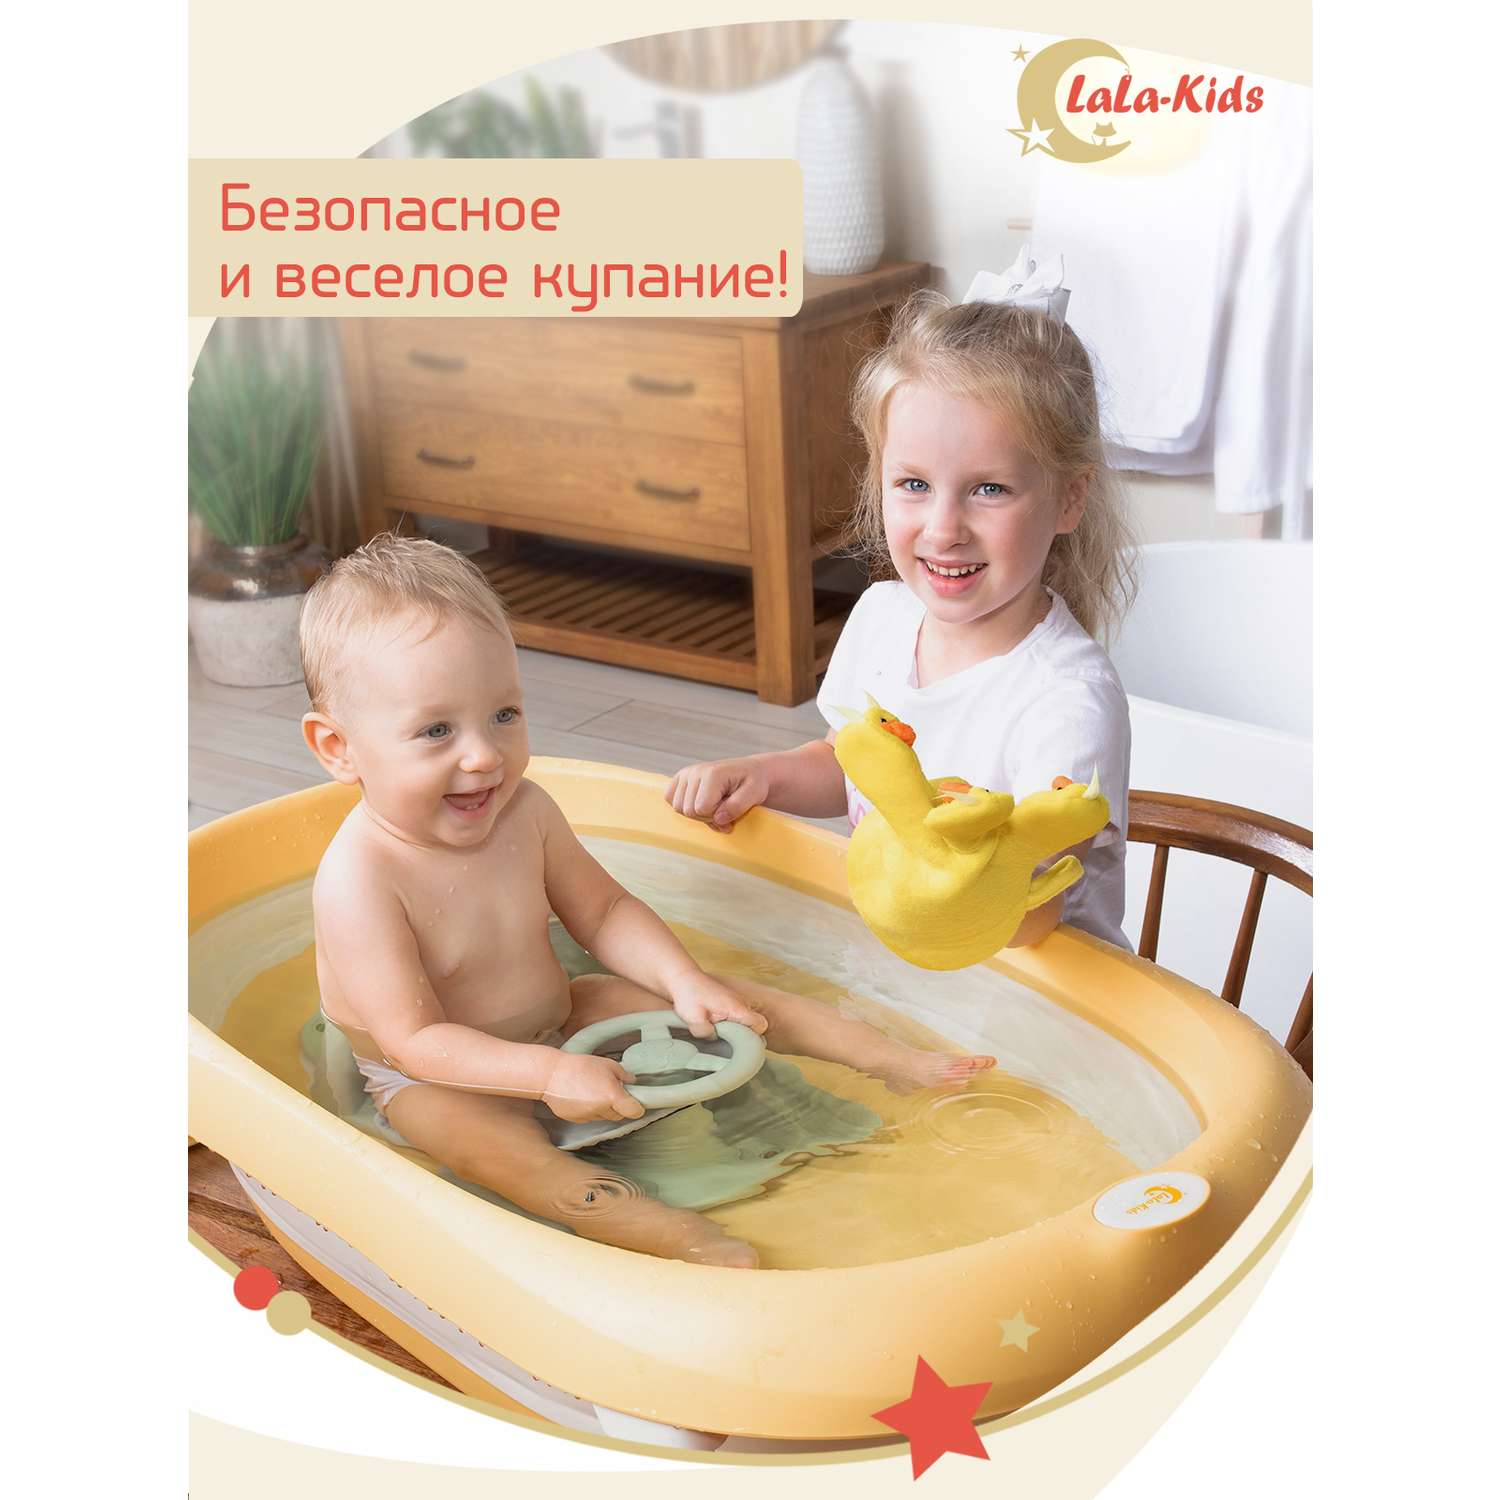 Сиденье LaLa-Kids для купания с мягким ковриком Машинка зеленое - фото 3